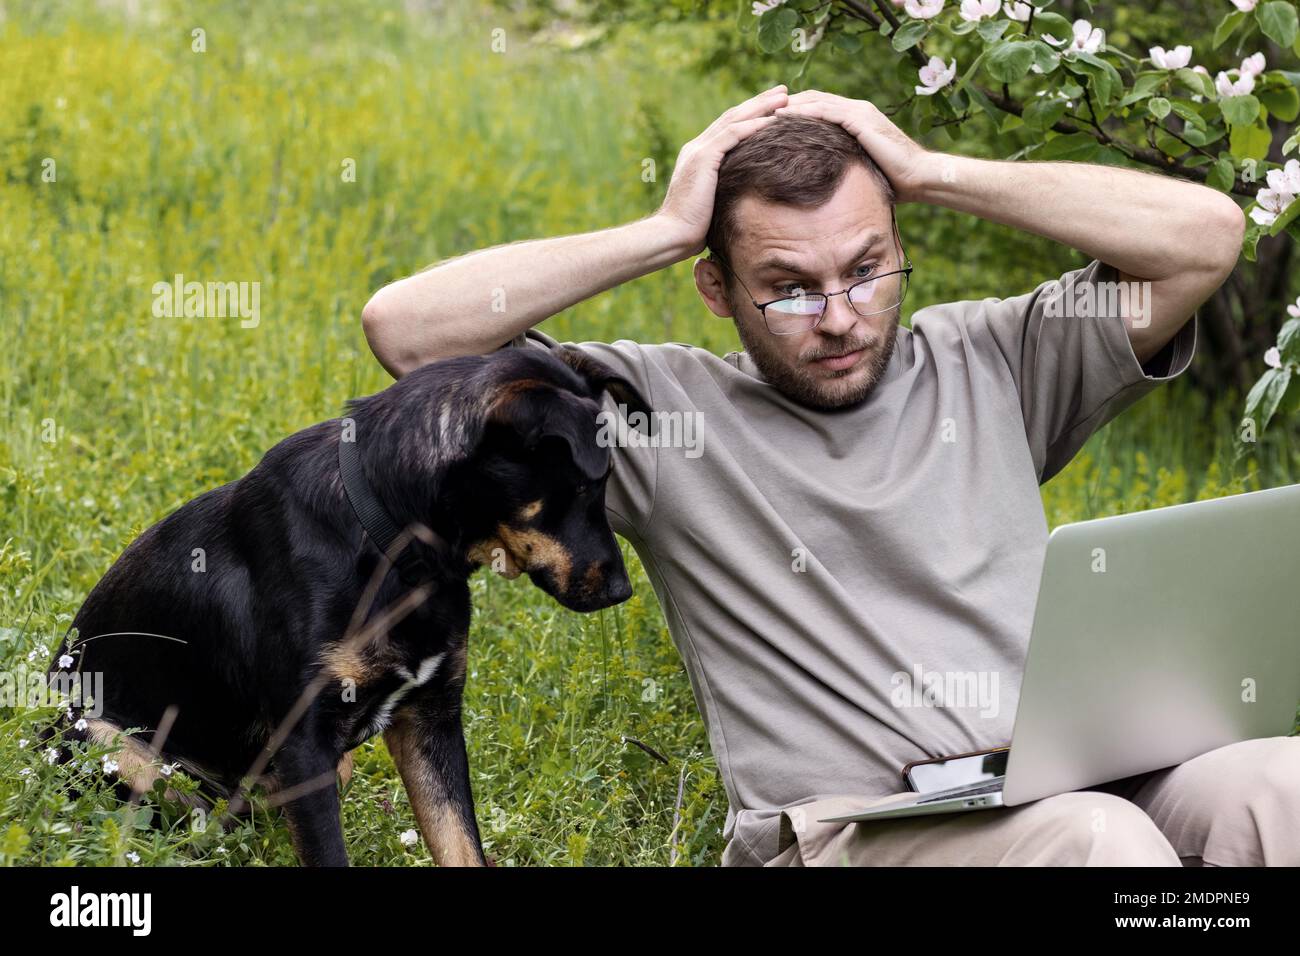 Mann und Hund schauten mit erstaunlichen Emotionen auf den Bildschirm des Laptops und schockierten den Gesichtsausdruck mit dem Kopf in den Händen, während sie draußen auf grünem Gras saßen. Stockfoto